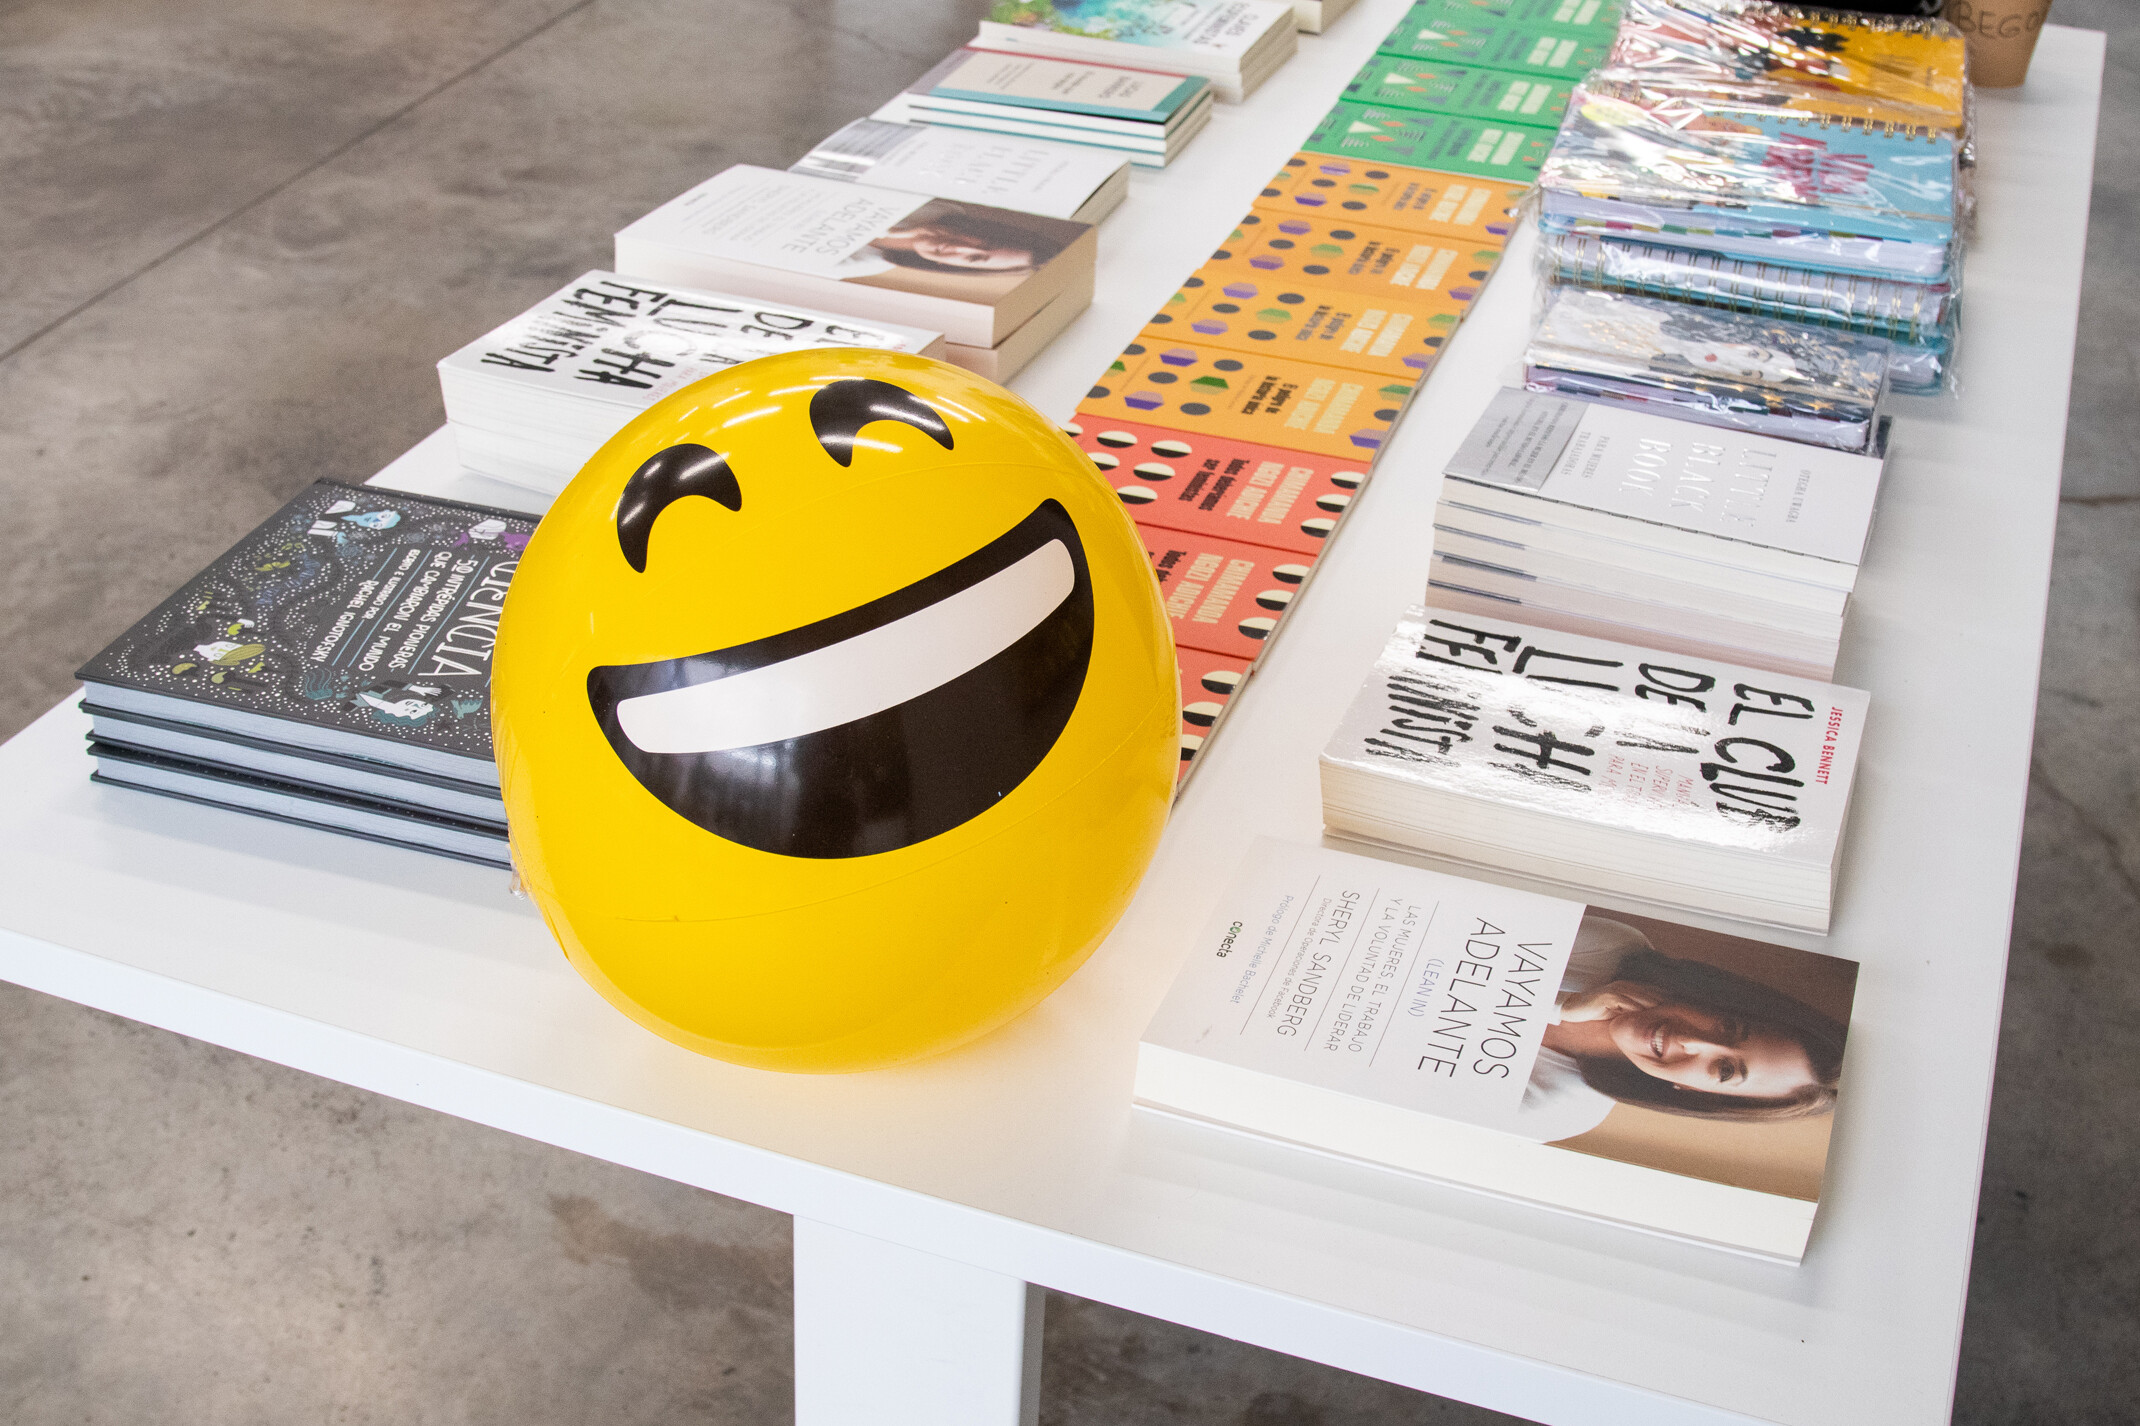 Una pelota con una cara sonriente sobre una mesa con diferentes libros sobre mujeres y ciencia